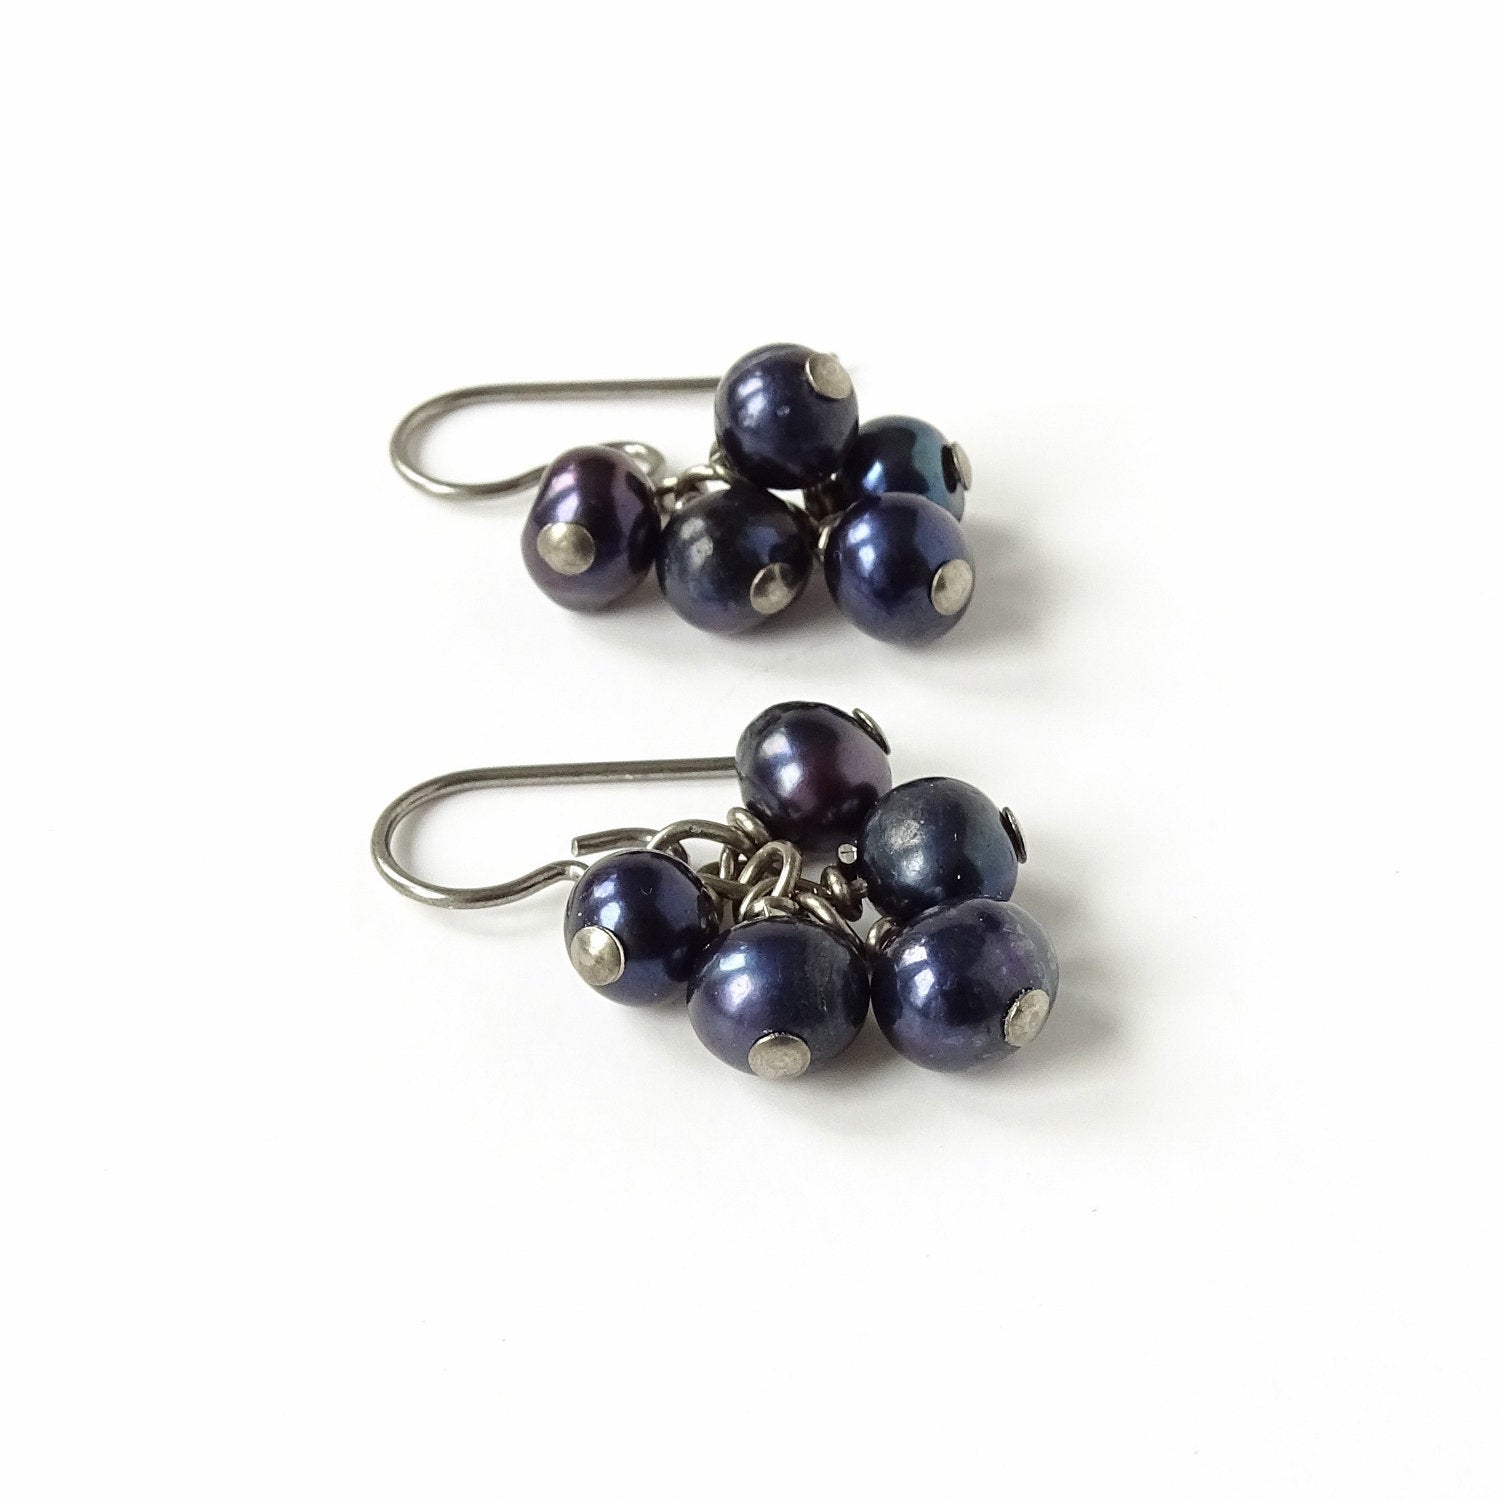 Black Pearl Cluster Niobium Earrings, Hypoallergenic Titanium Earrings For Sensitive Ears, Cascading Blue Purple Pearls Nickel Free Earrings